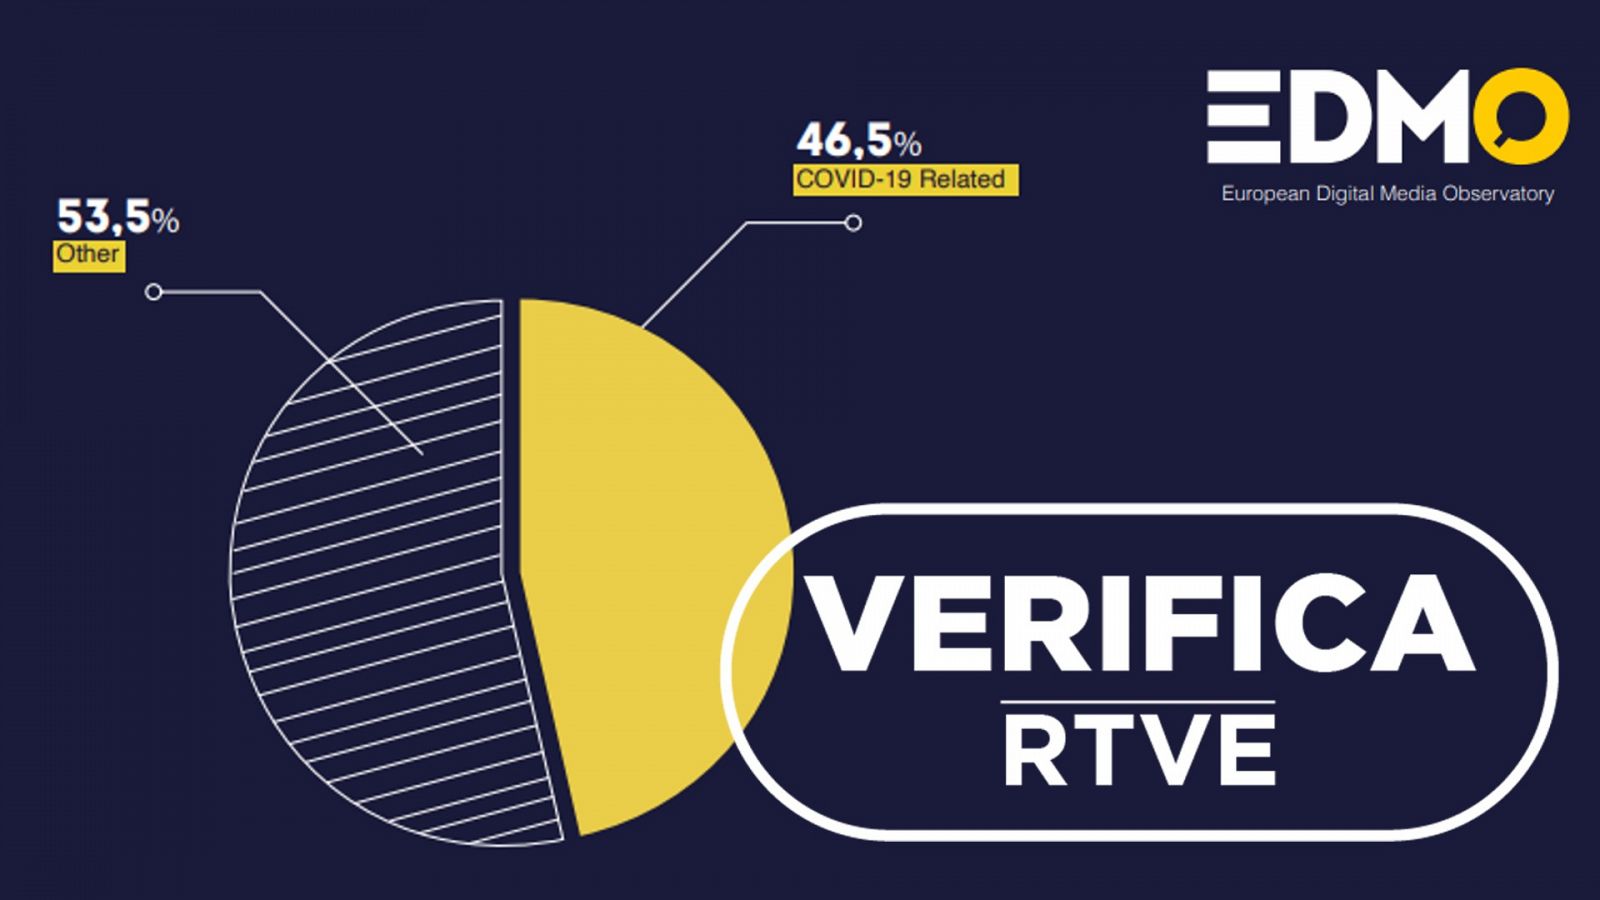 Gráfico que indica que un 46,5% de los bulos son sobre la COVID-19 con el sello VerificaRTVE